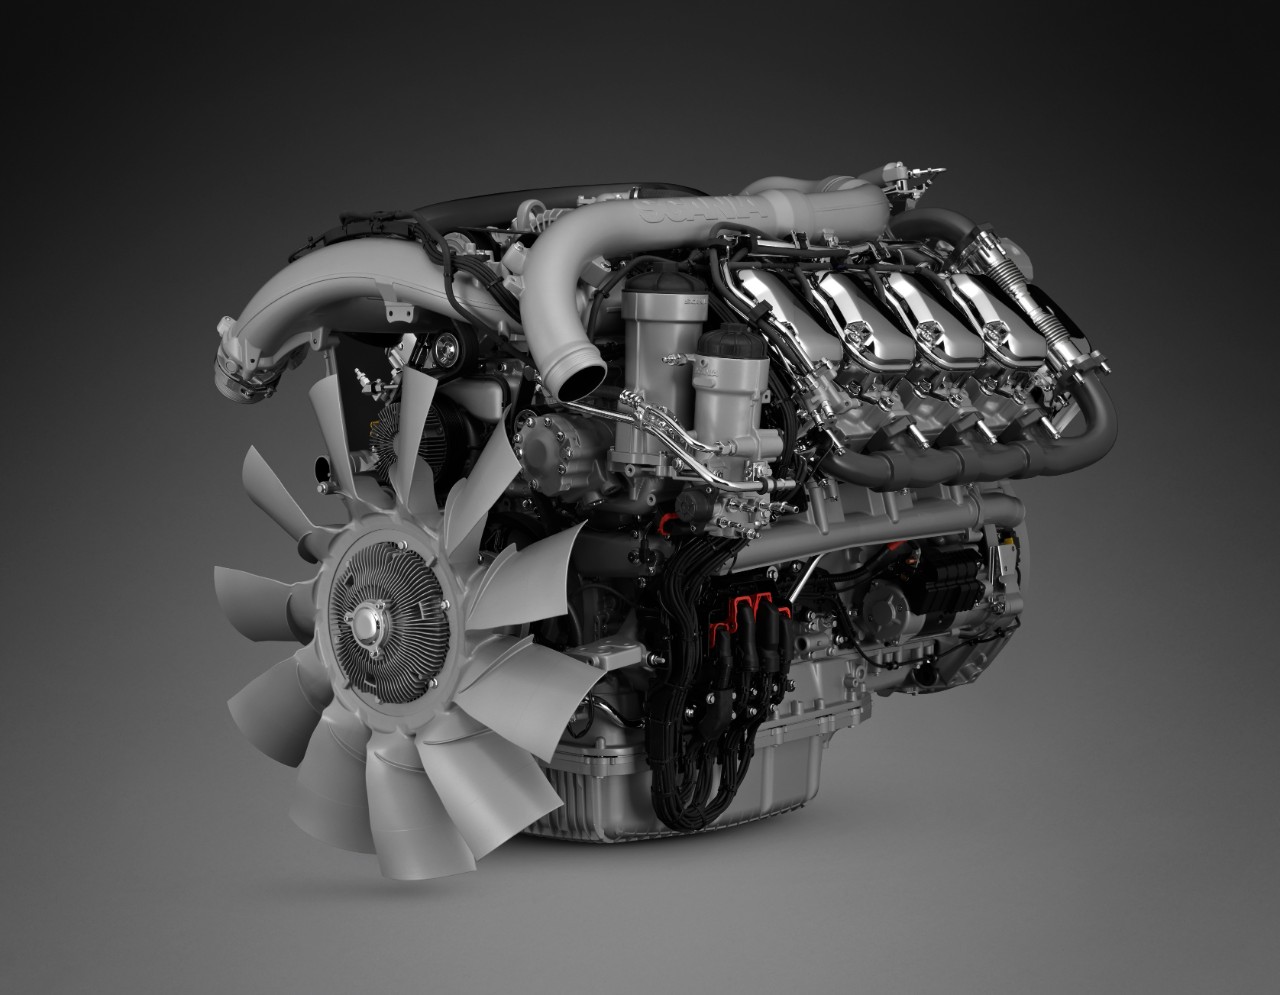 16-liter V8